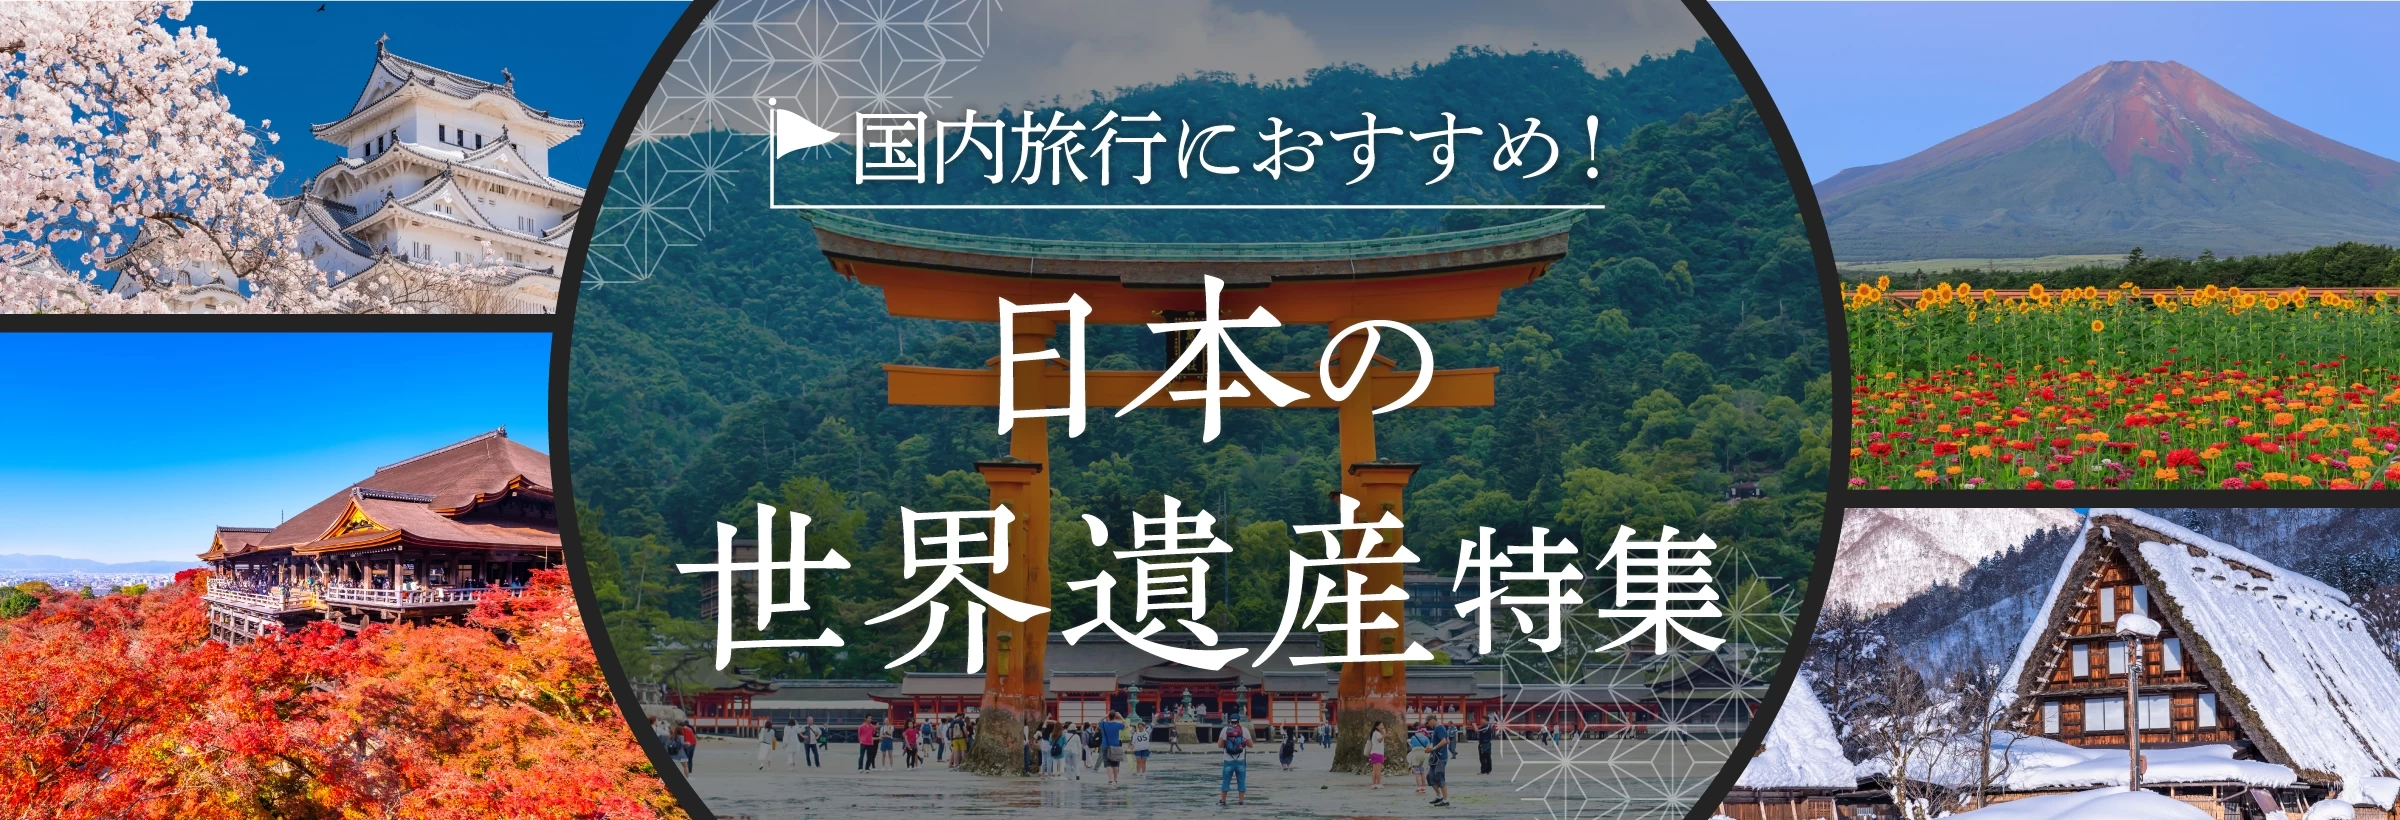 「人類共通の財産」として、地球上に1,000件以上ある世界遺産。日本では現在25件の世界遺産が登録されています。京都や奈良の寺社仏閣や、北海道、沖縄の大自然など、どれもが悠久の歴史を誇る人気観光地となっています。そこで今回は、国内の世界遺産を旅するプランをご紹介します。